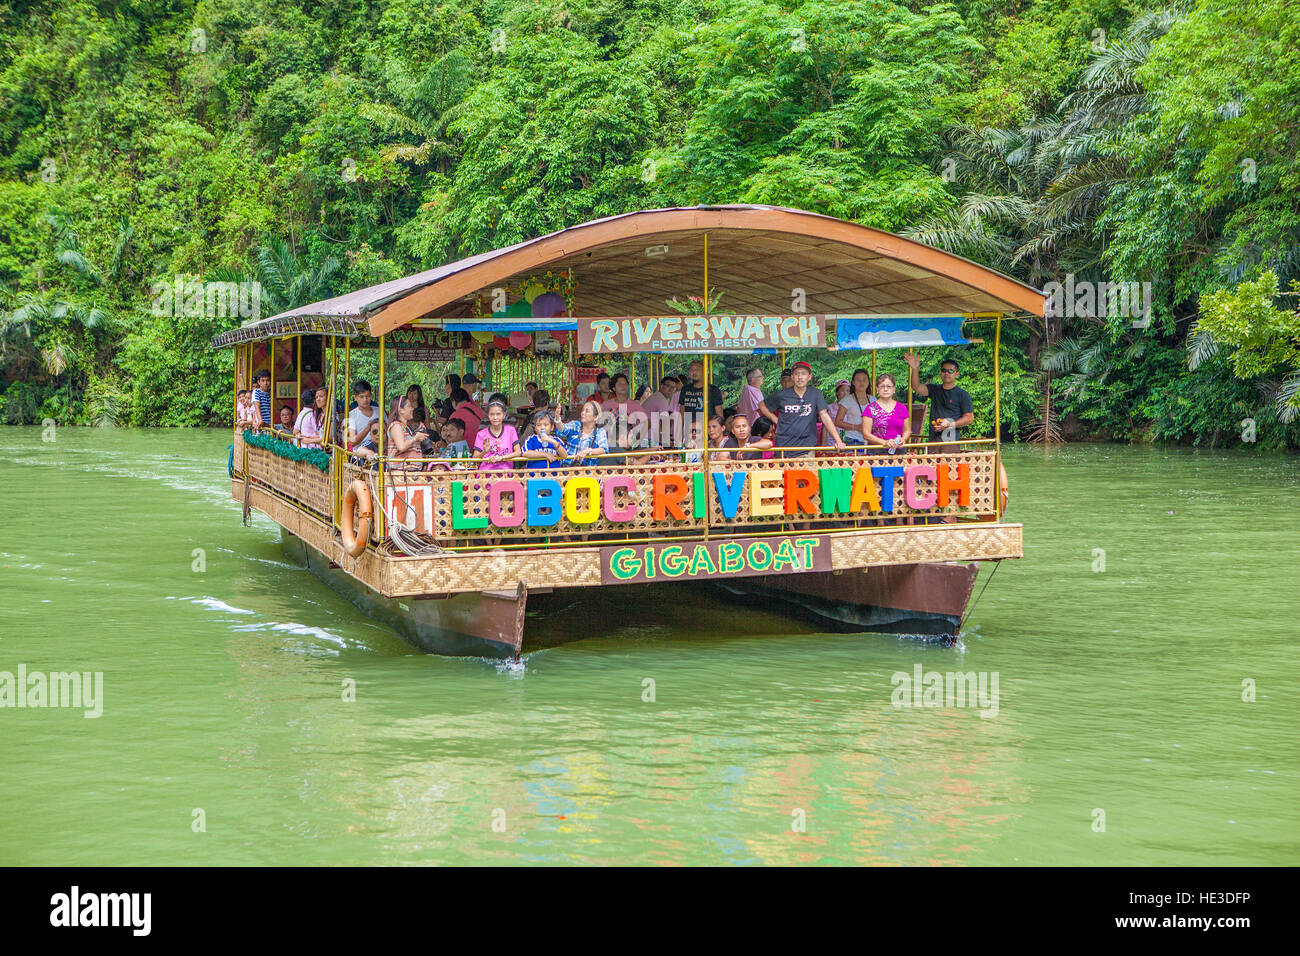 Los vacacionistas disfrutan una cena y crucero por el Río Loboc con Riverwatch Gigaboat excursiones en la isla de Bohol, Filipinas. Foto de stock